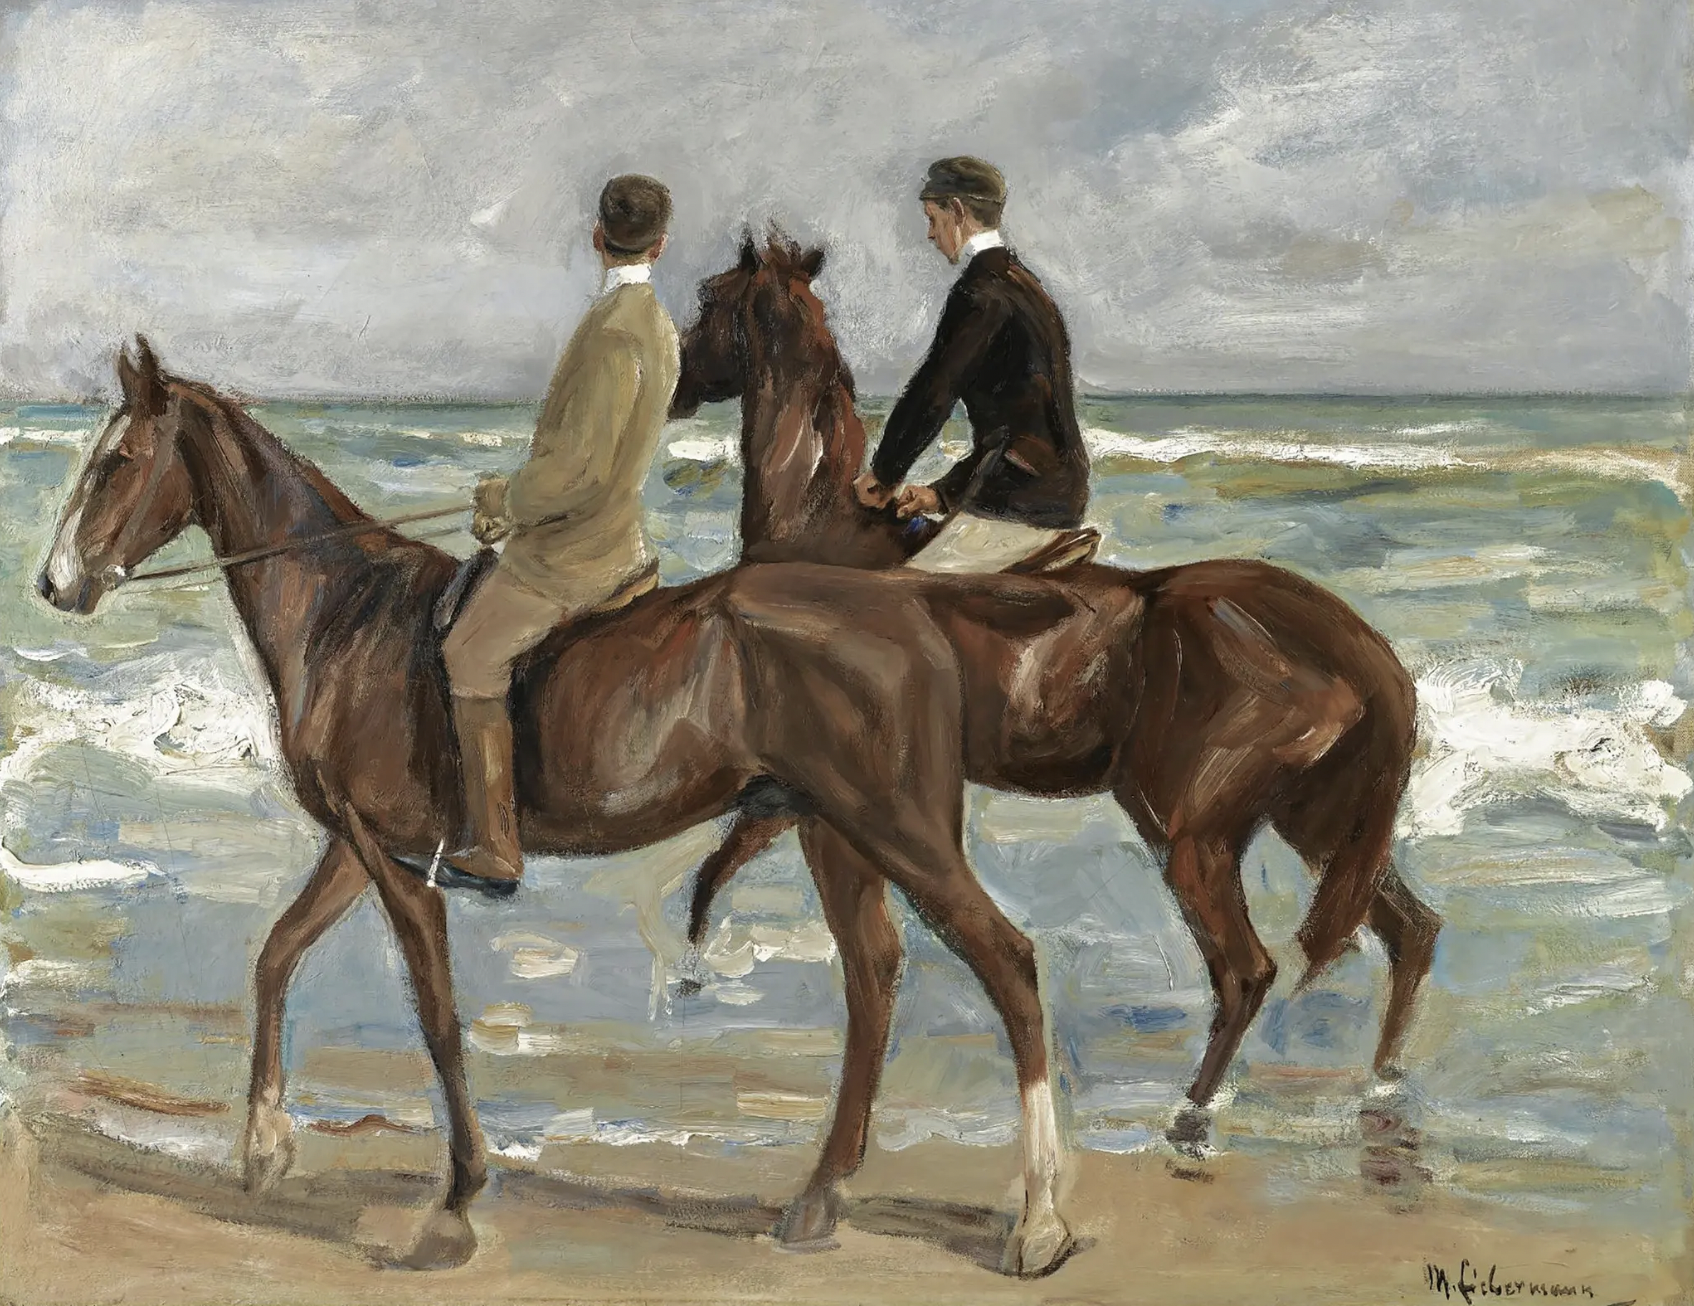 Max Liebermann, “Two Riders on a Beach” (1901).